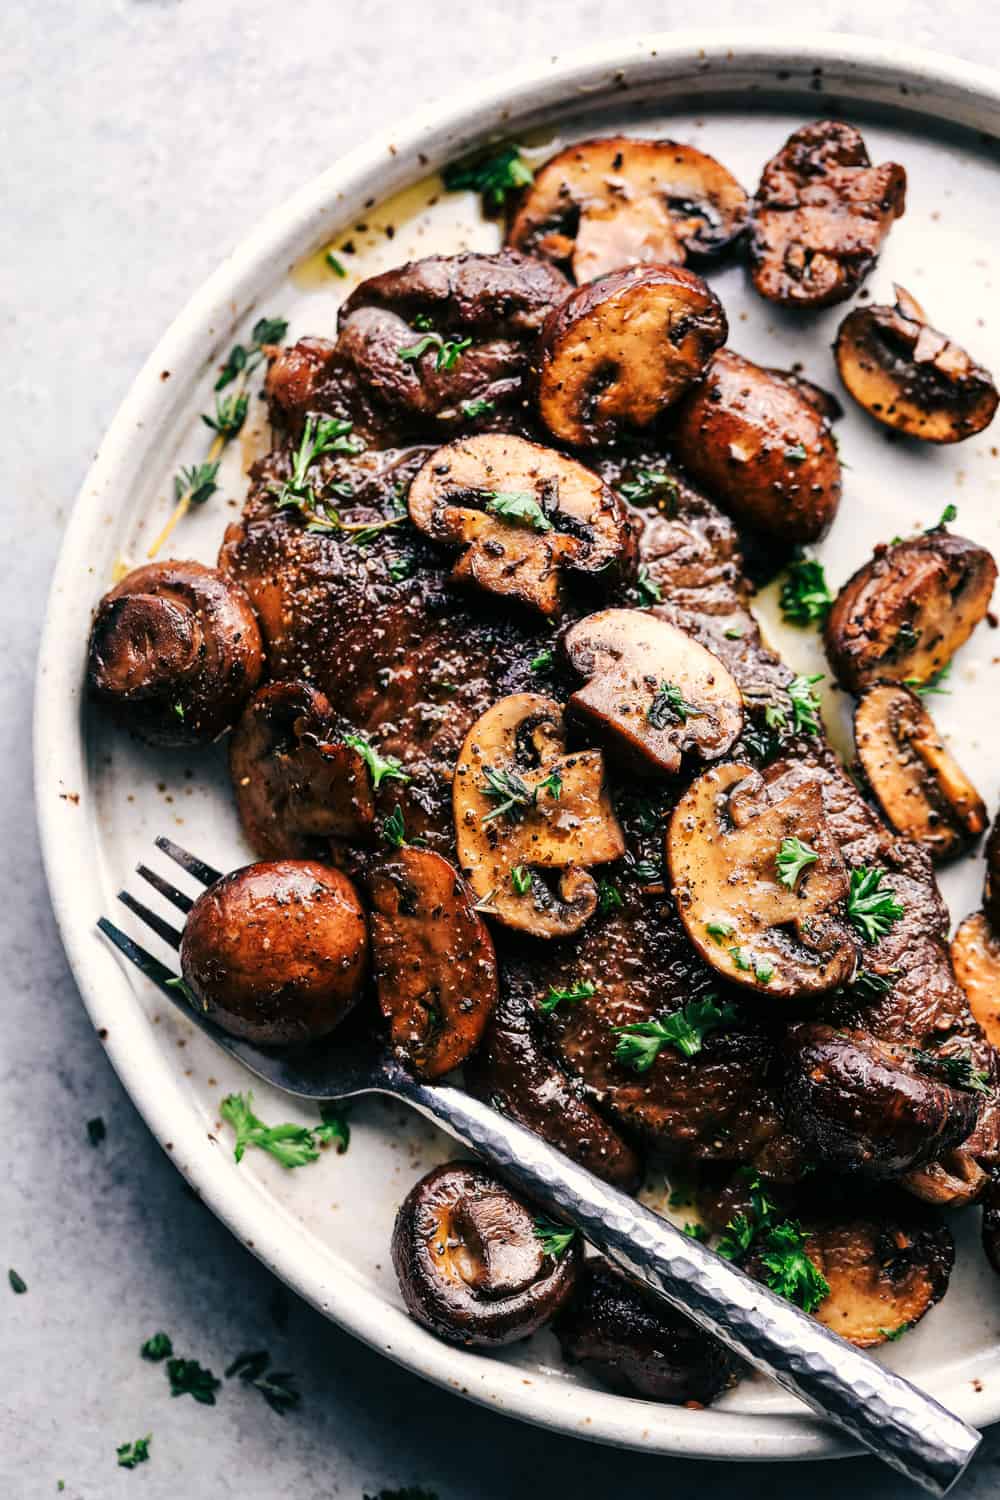 Garlic Butter Herb Steak and Mushrooms | The Recipe Critic